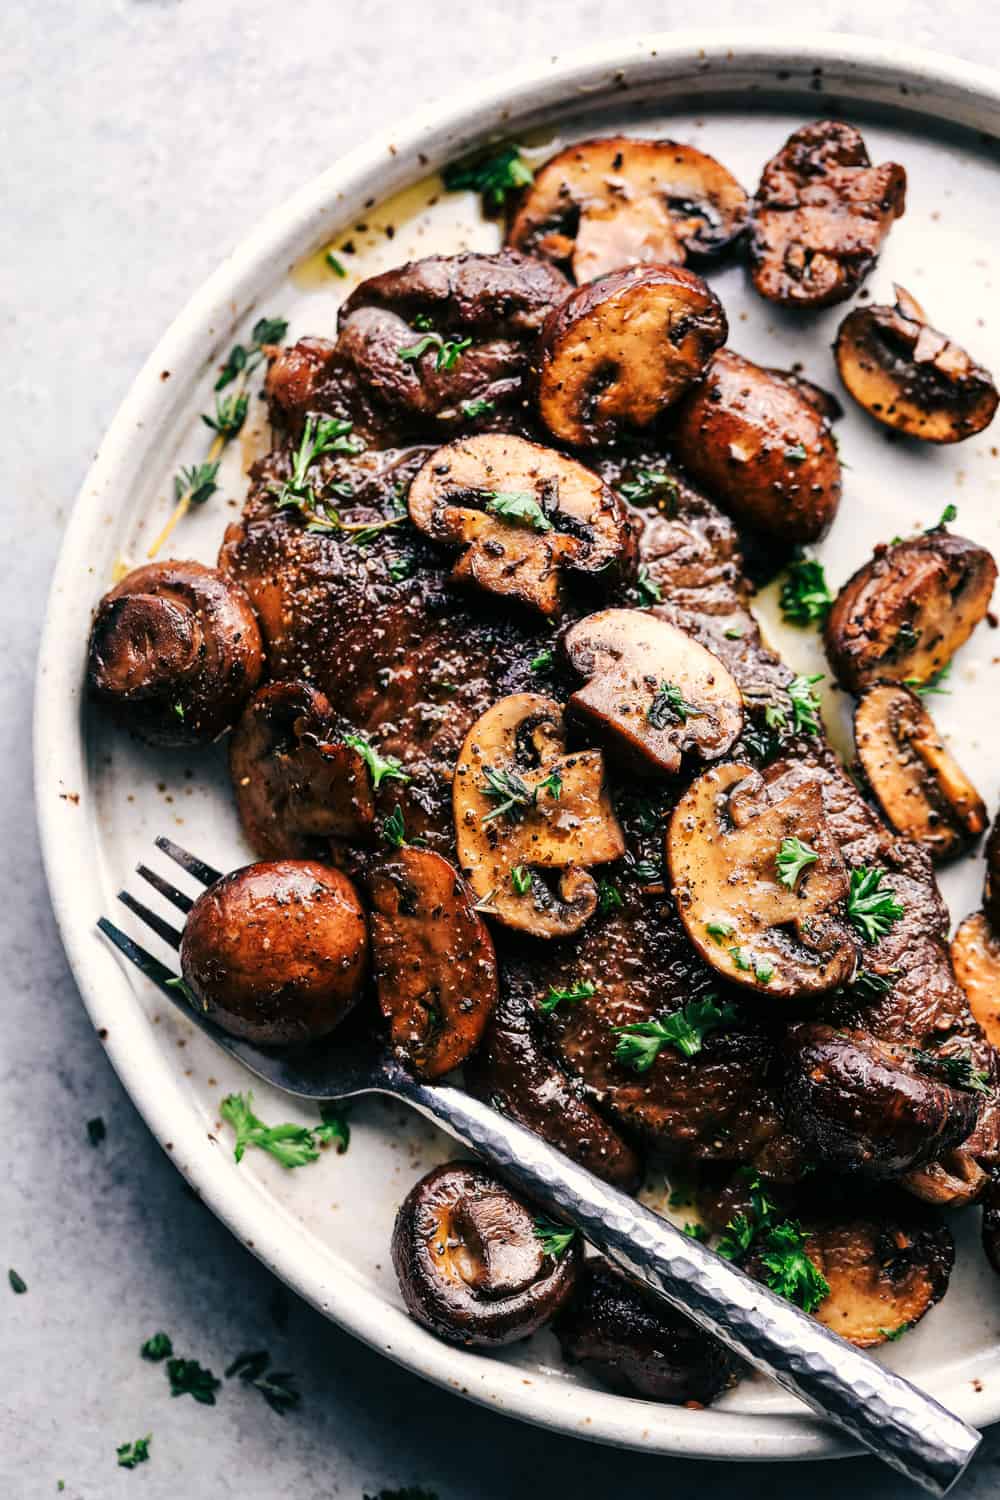 Garlic Butter Herb Steak and Mushrooms | The Recipe Critic